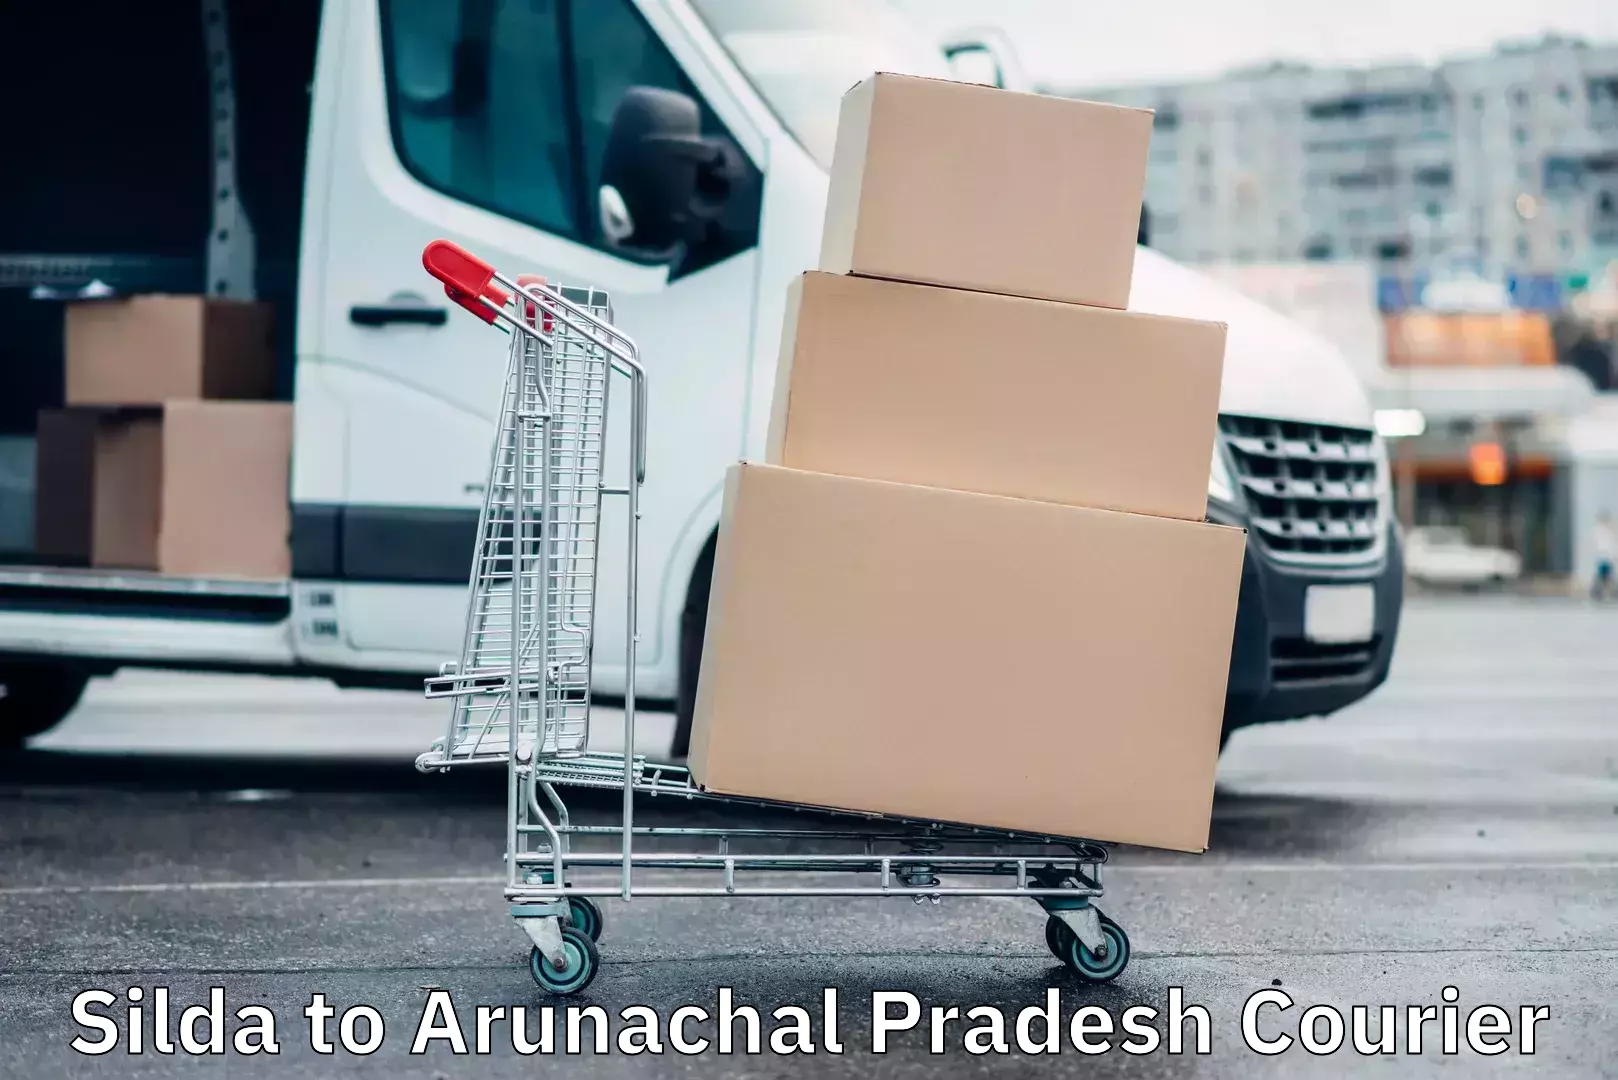 Express logistics service Silda to Arunachal Pradesh